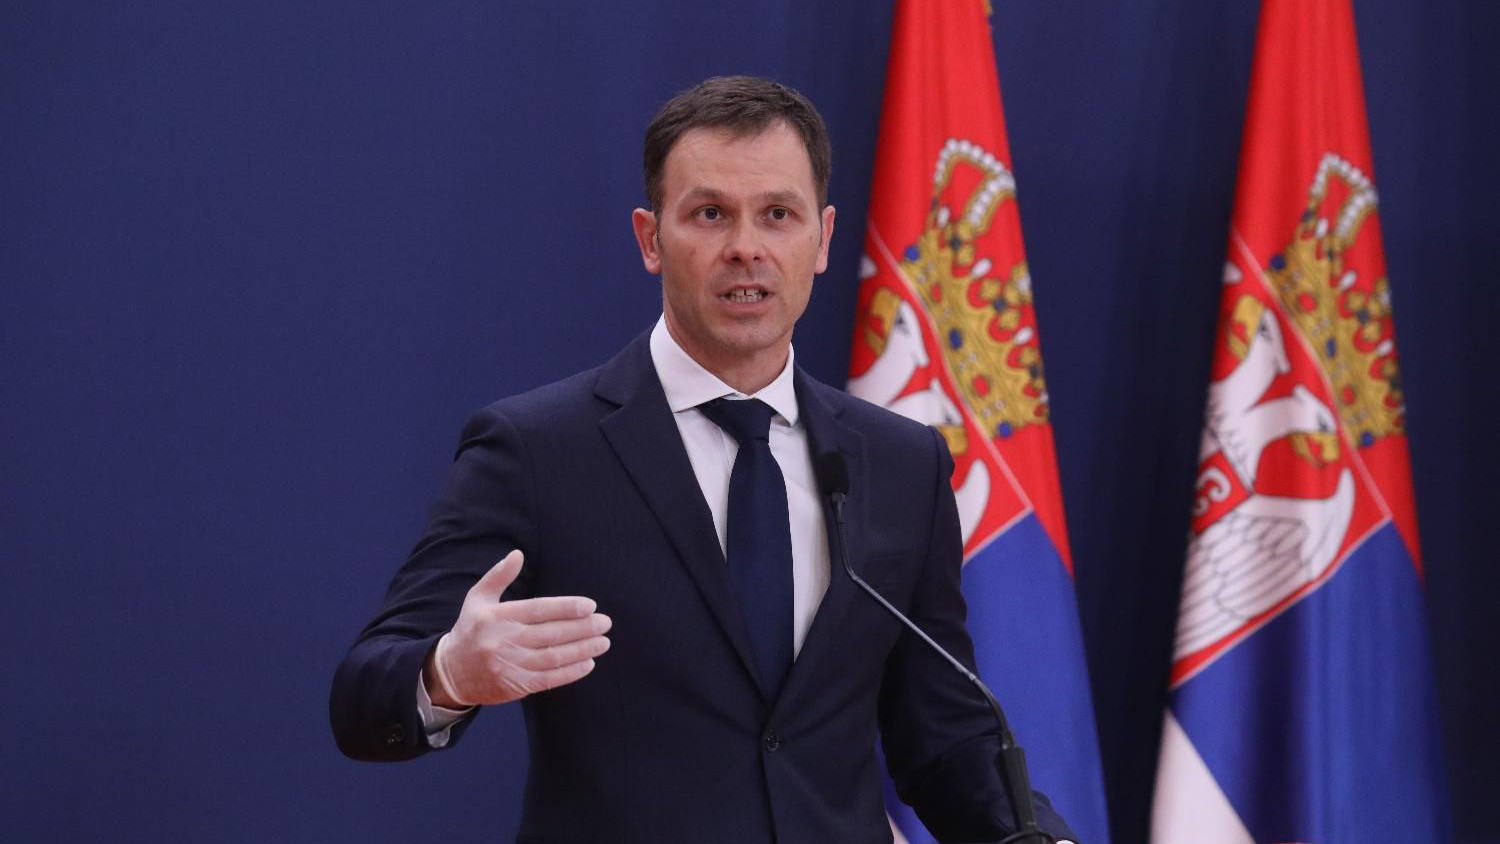 Mali: Er Srbija samostalno izmirila obaveze prema kreditoru, potvrda odgovornog upravljanja 1